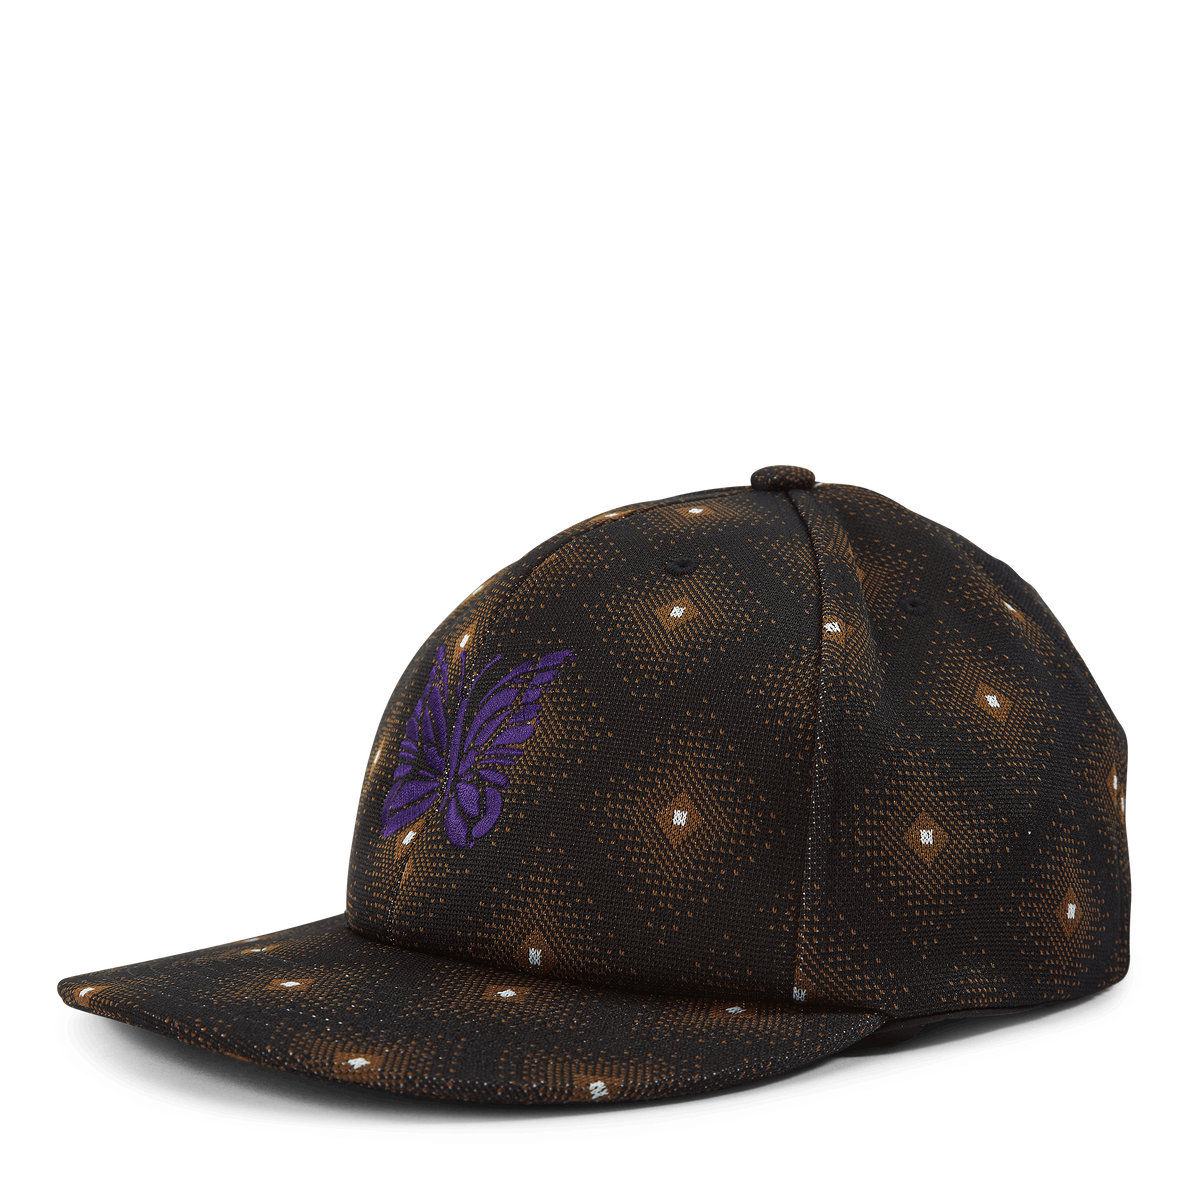 Baseball Cap - Poly Jq. Black